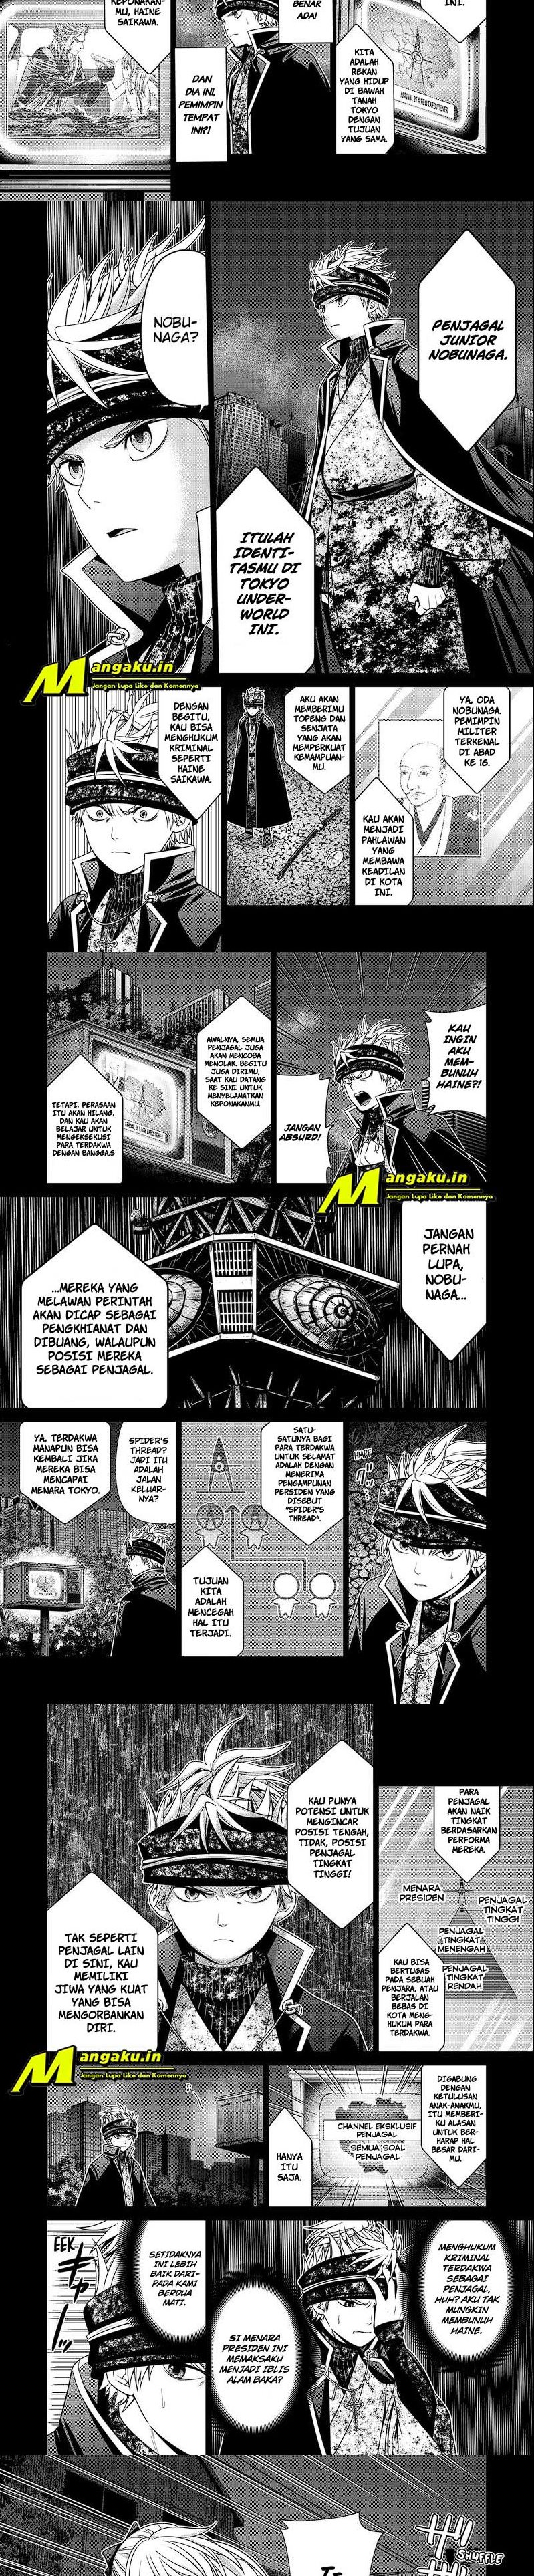 Tokyo Underworld Chapter 28 - 45